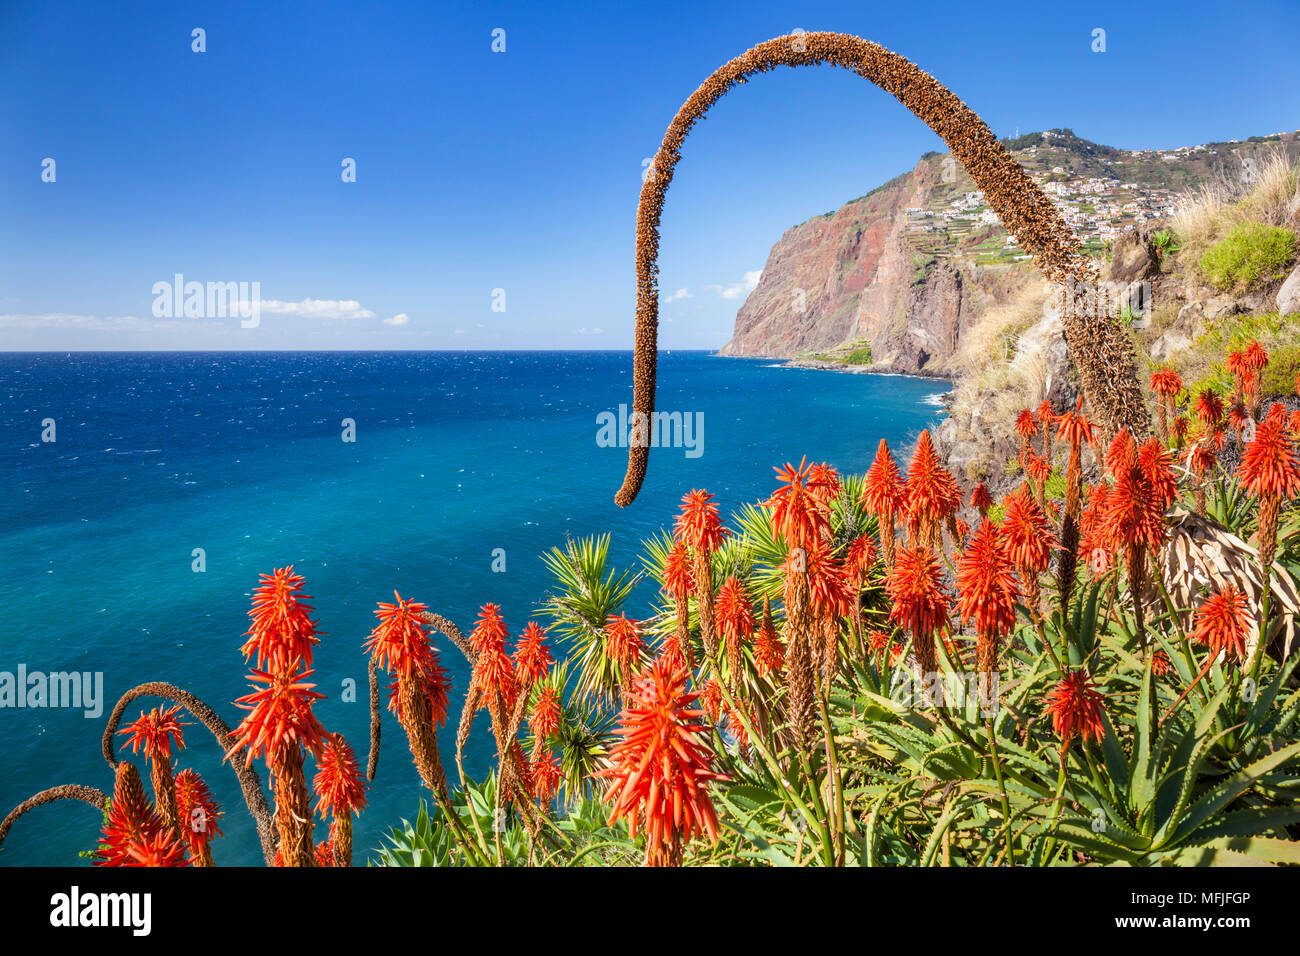 El Acantilado Cabo Girao cabecero con rojo Kranz aloe (Aloe arborescens) y Agave attenuata, Madeira, Portugal, el Atlántico, Europa Foto de stock